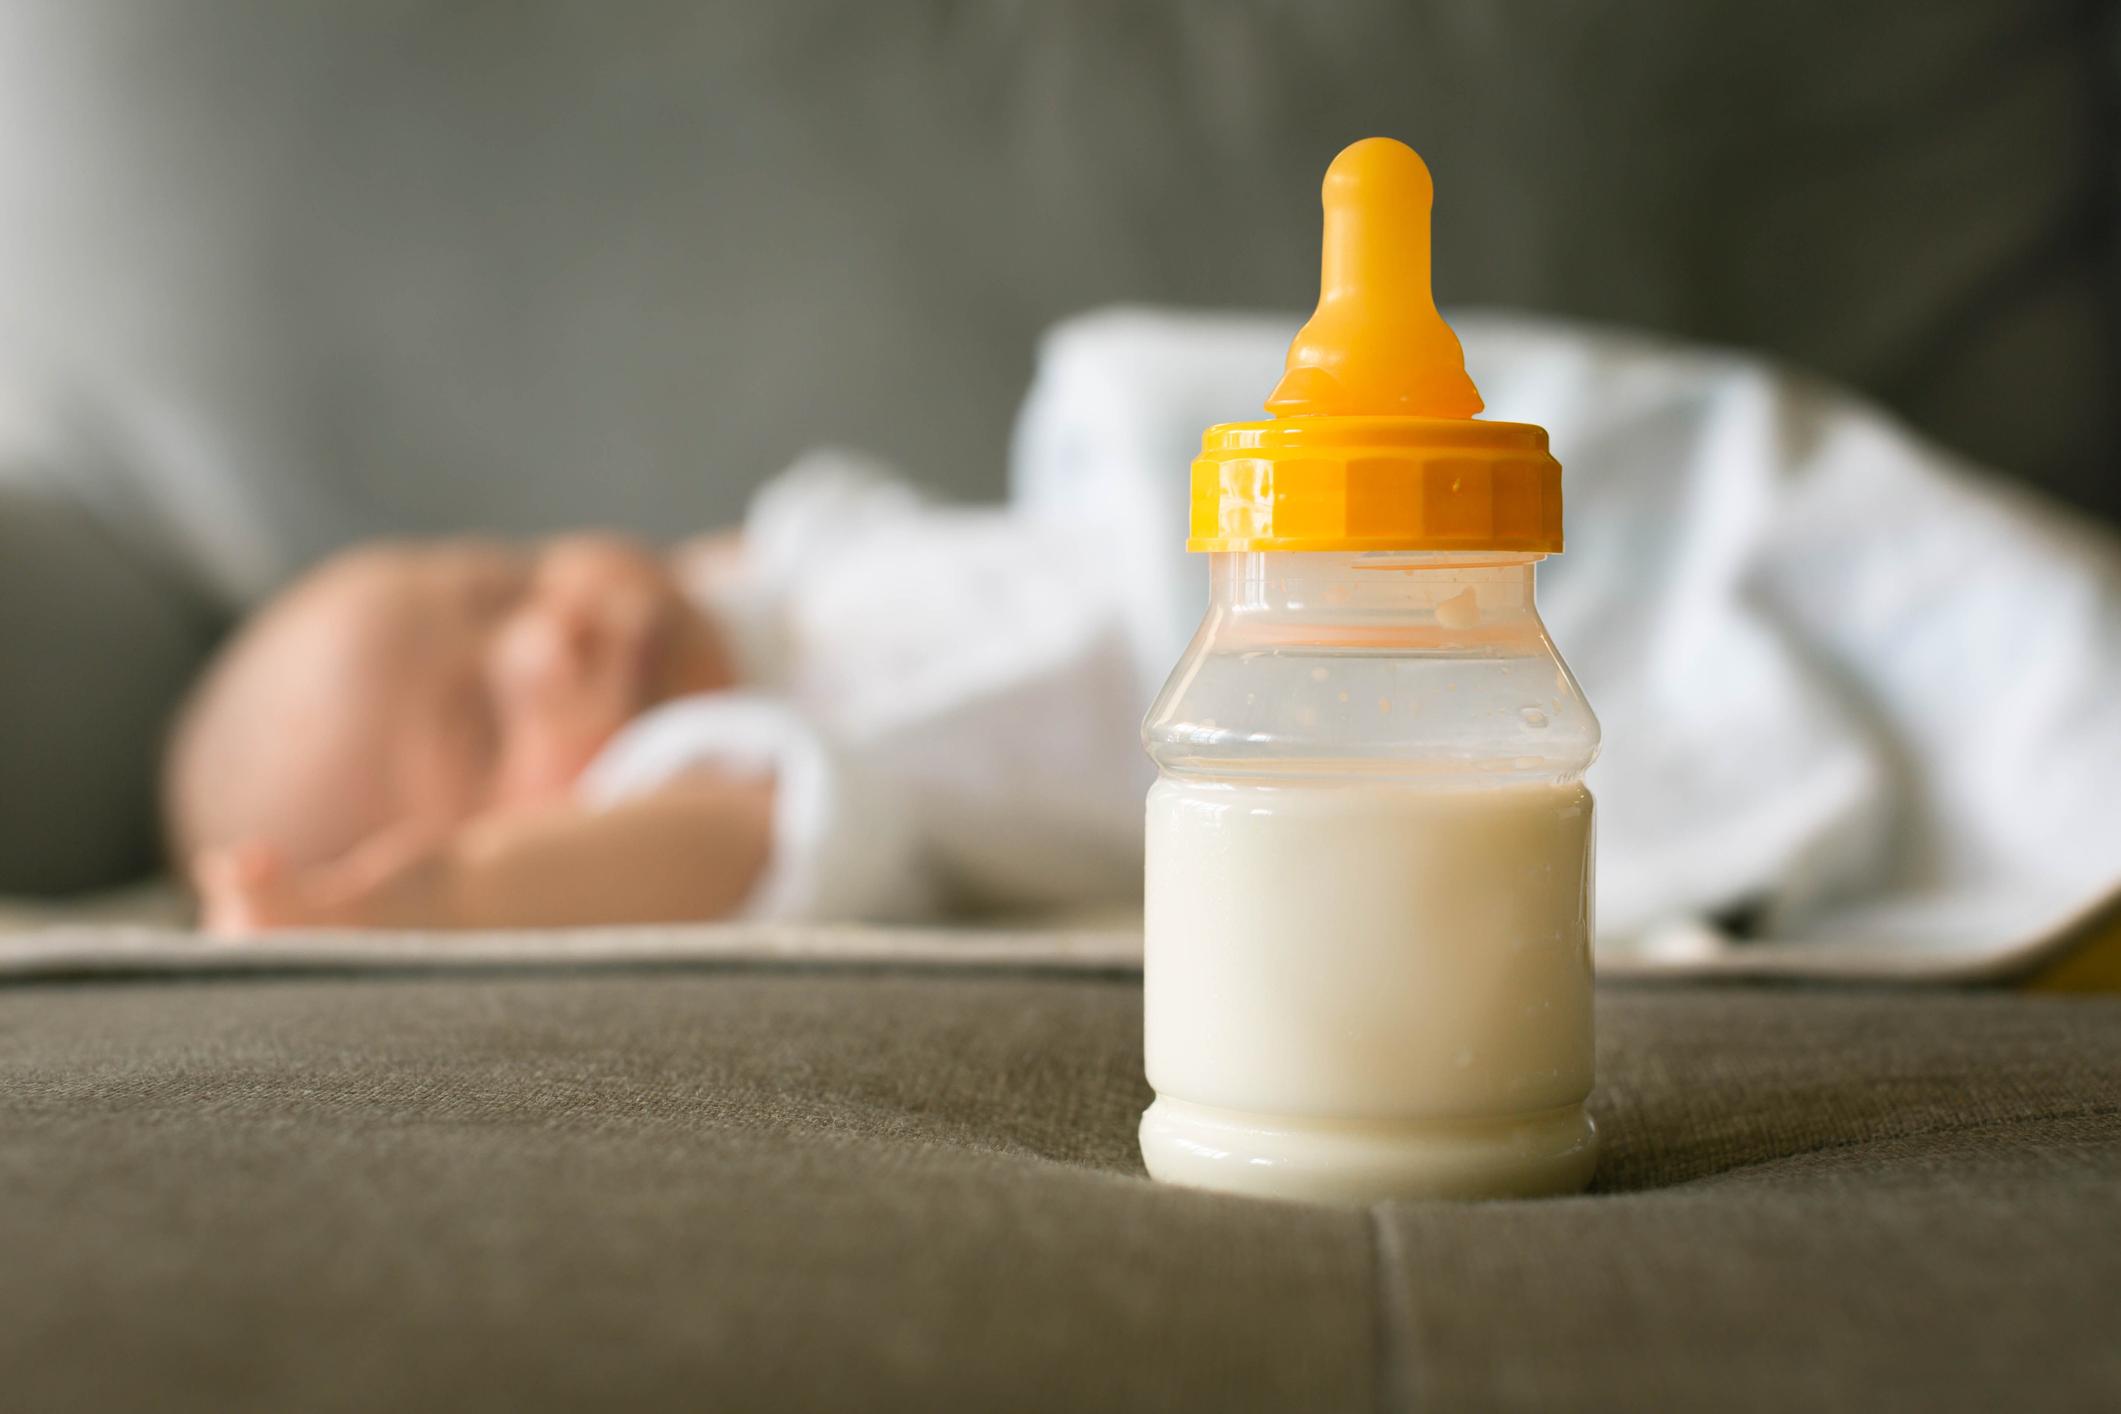 Paralysie cérébrale : une molécule identifiée dans le lait maternel pourrait inverser les effets 